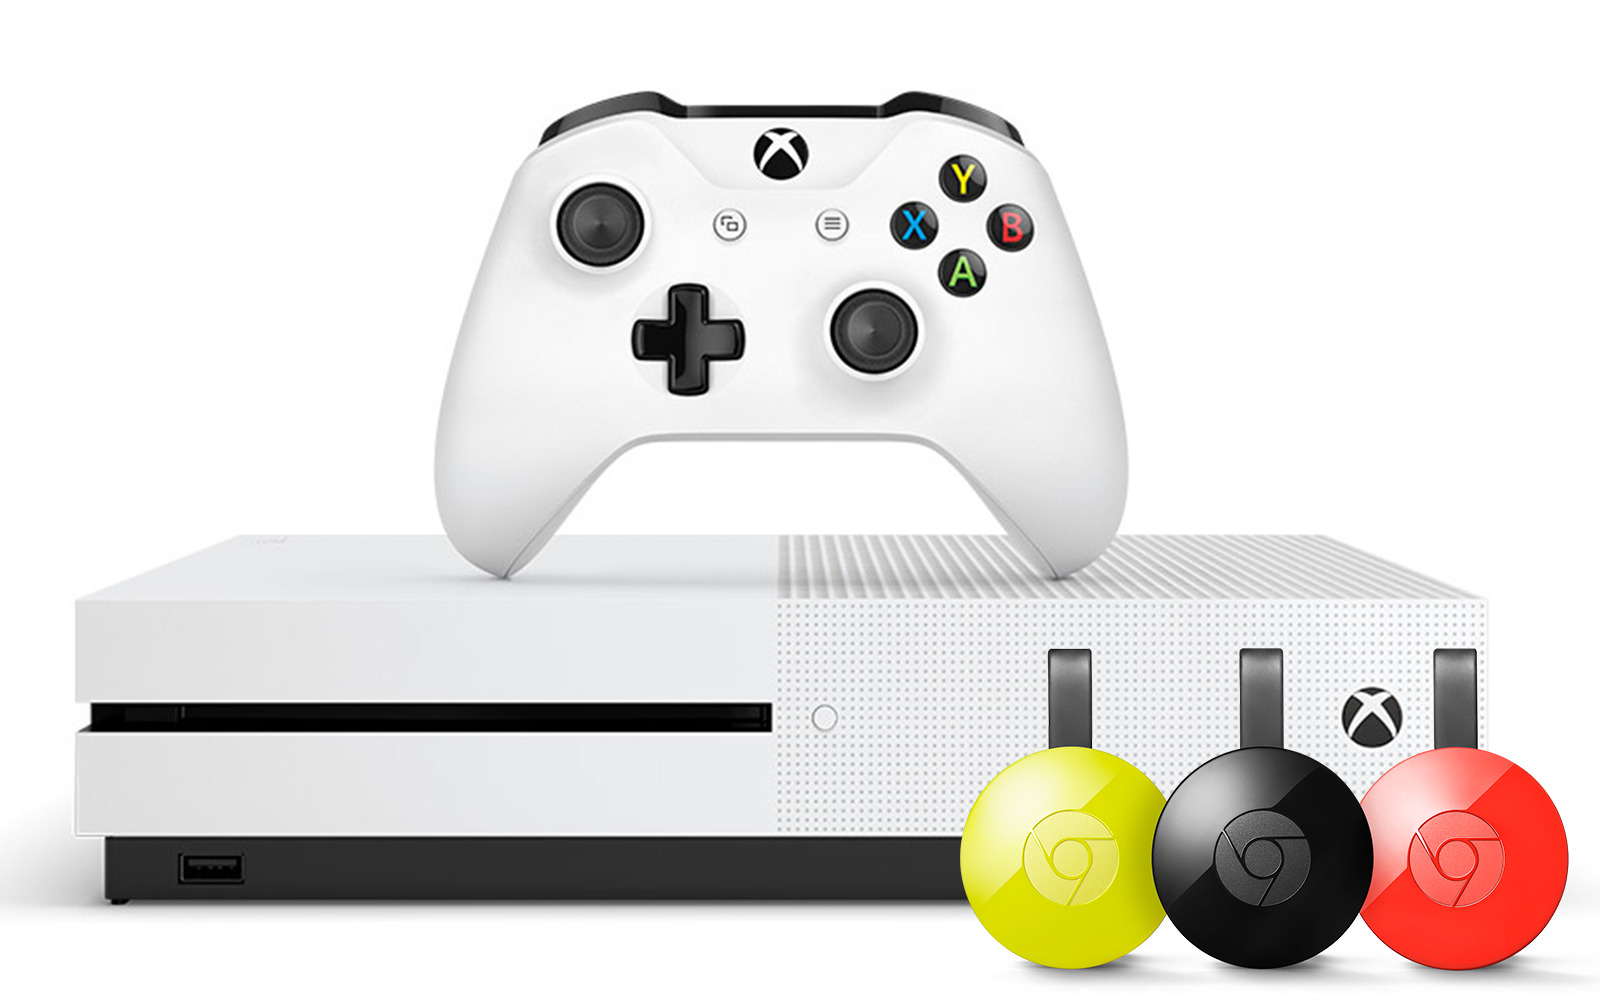 Chromecast'inizi Xbox One'da Nasıl Kullanırsınız?